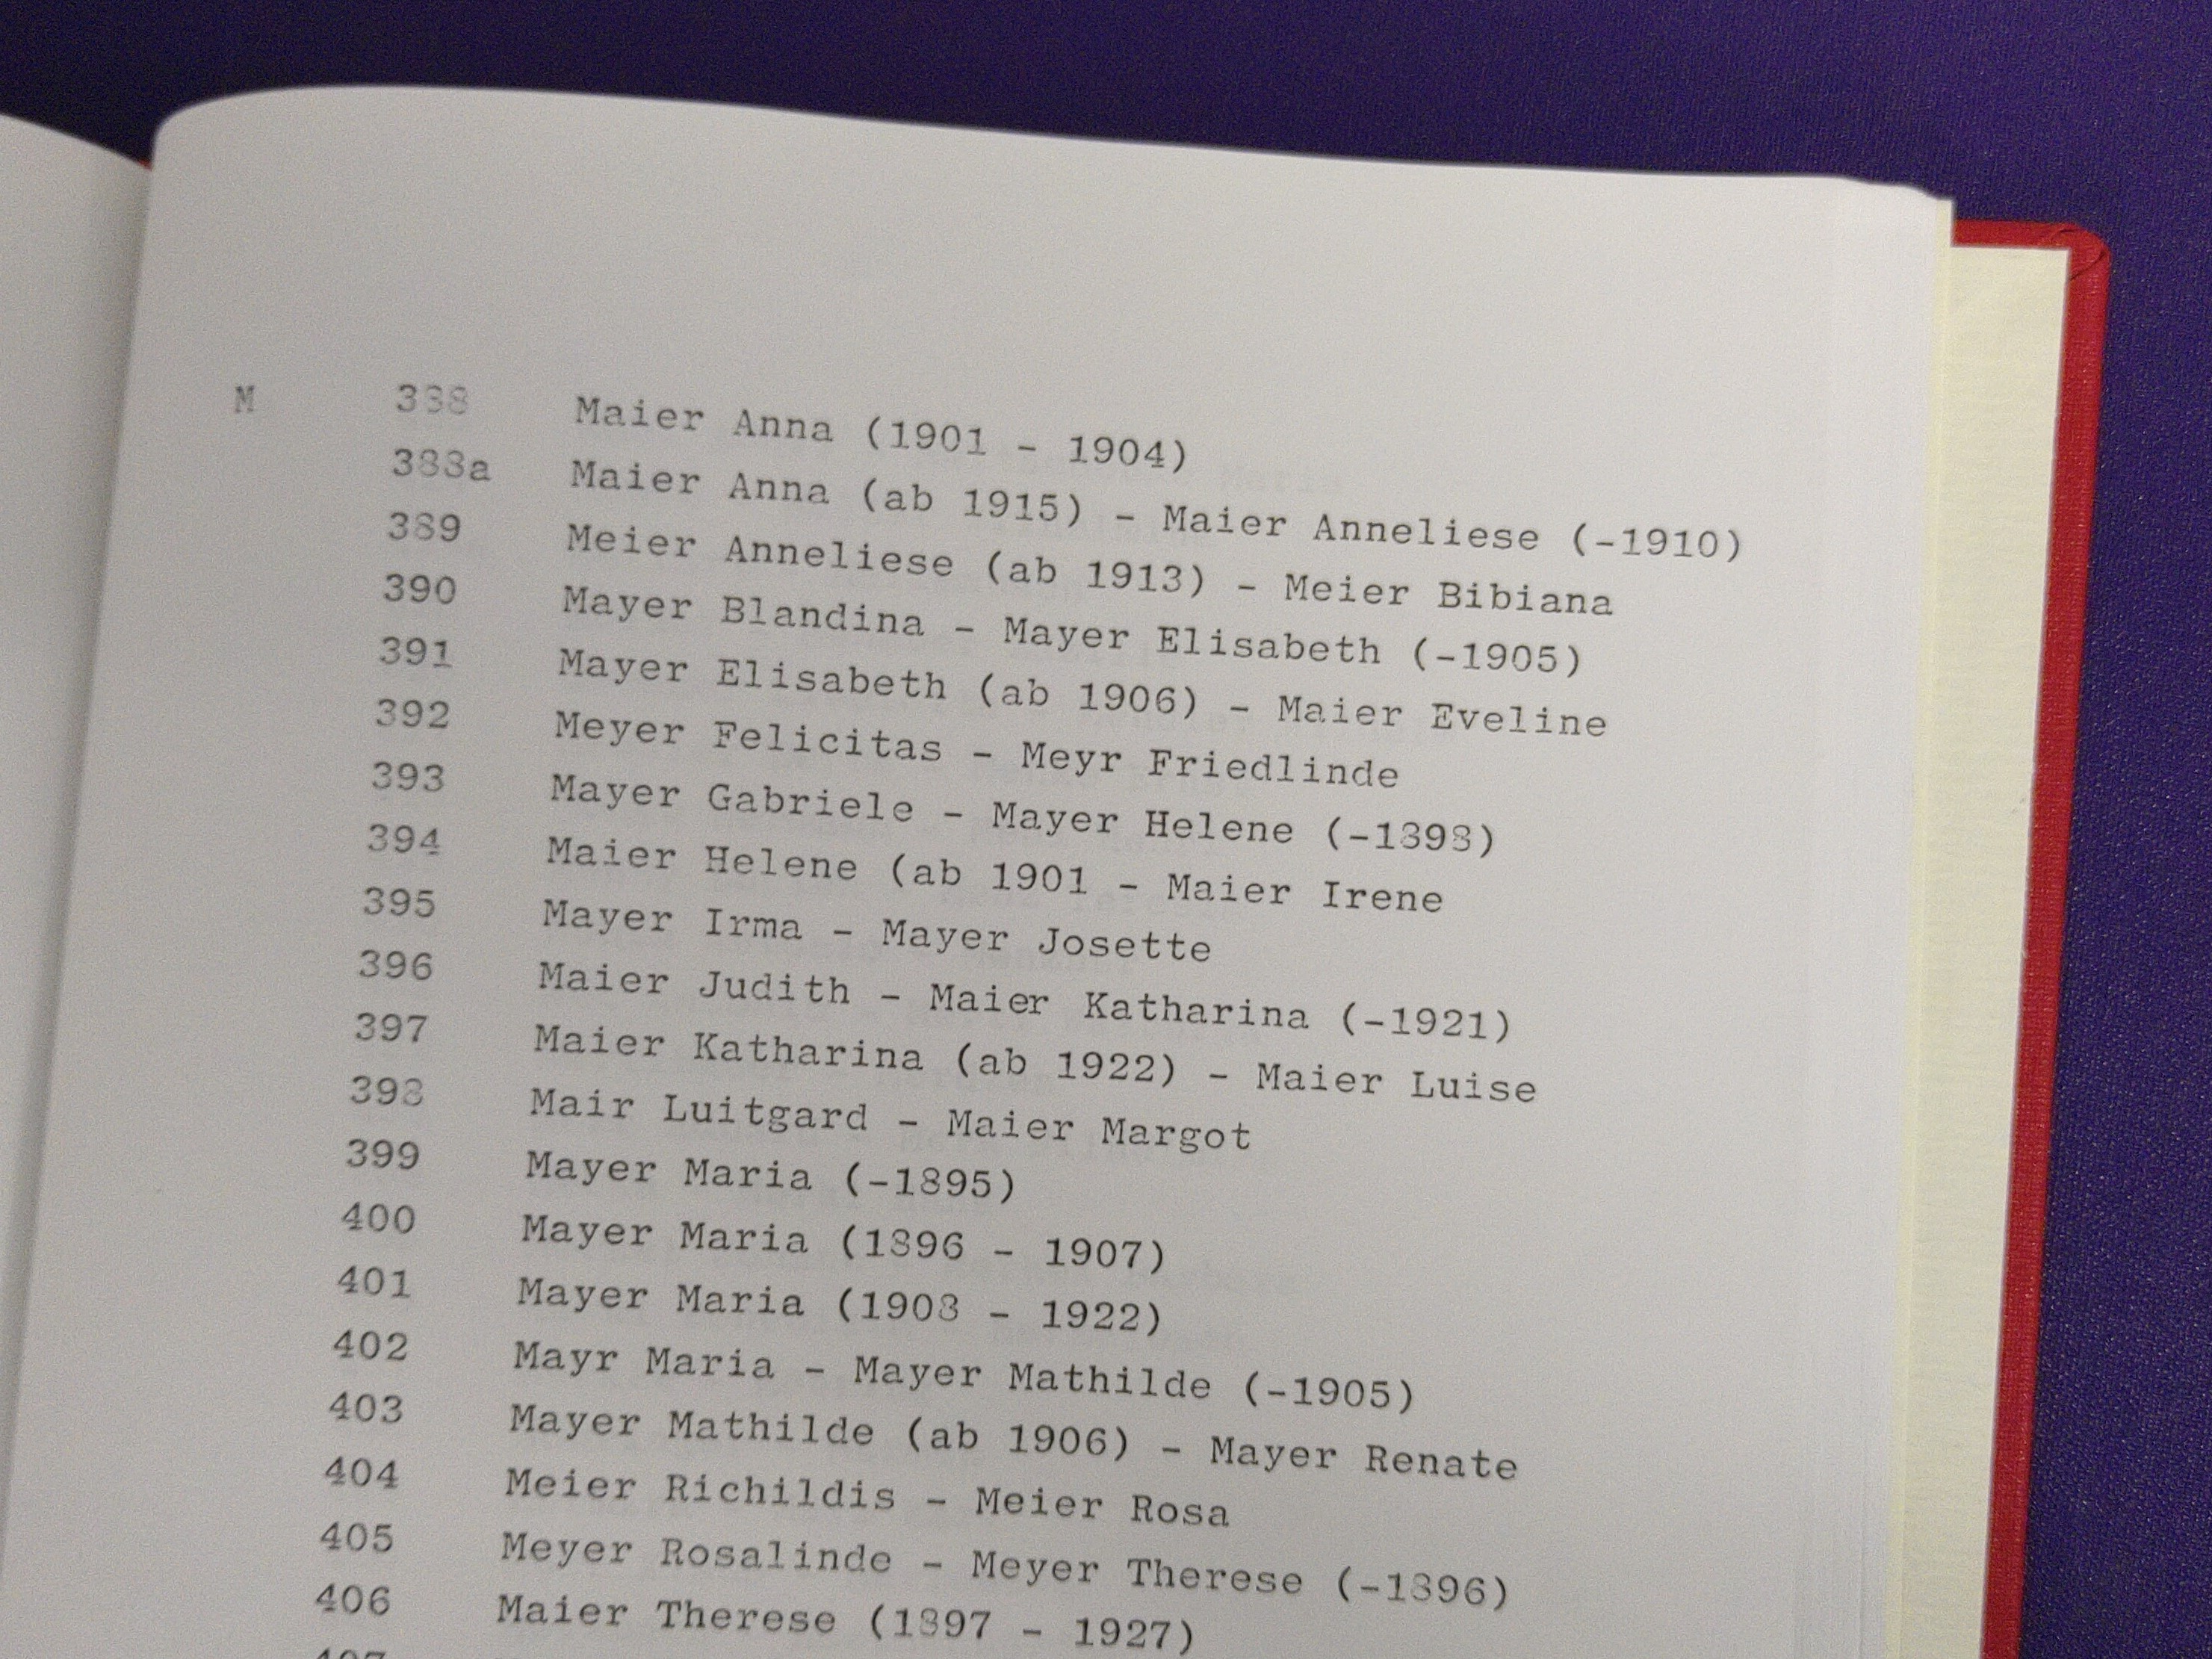 Seite aus dem Findbuch für die Einwohnermeldekarten. Zu sehen sind die Bündel für den Nachnamen Meier in verschiedenen Schreibweisen.